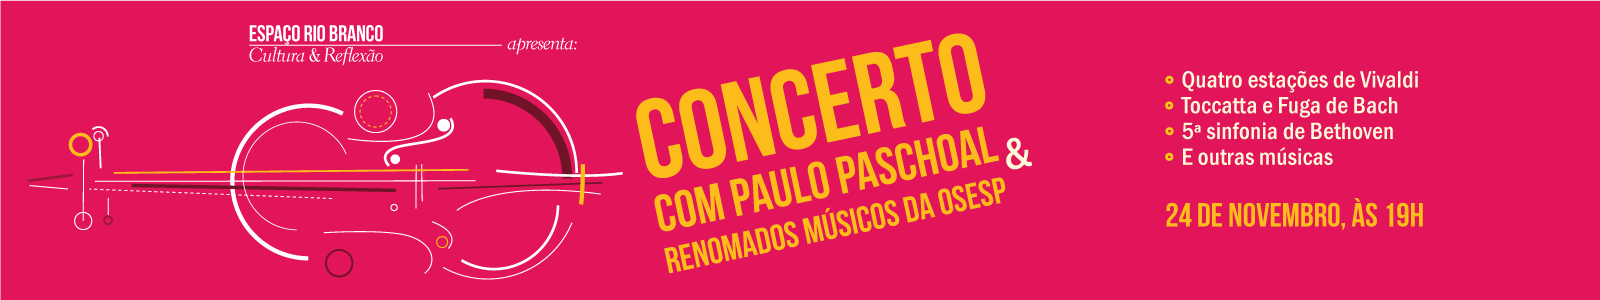 Concerto com Paulo Paschoal e renomados músicos da OSESP